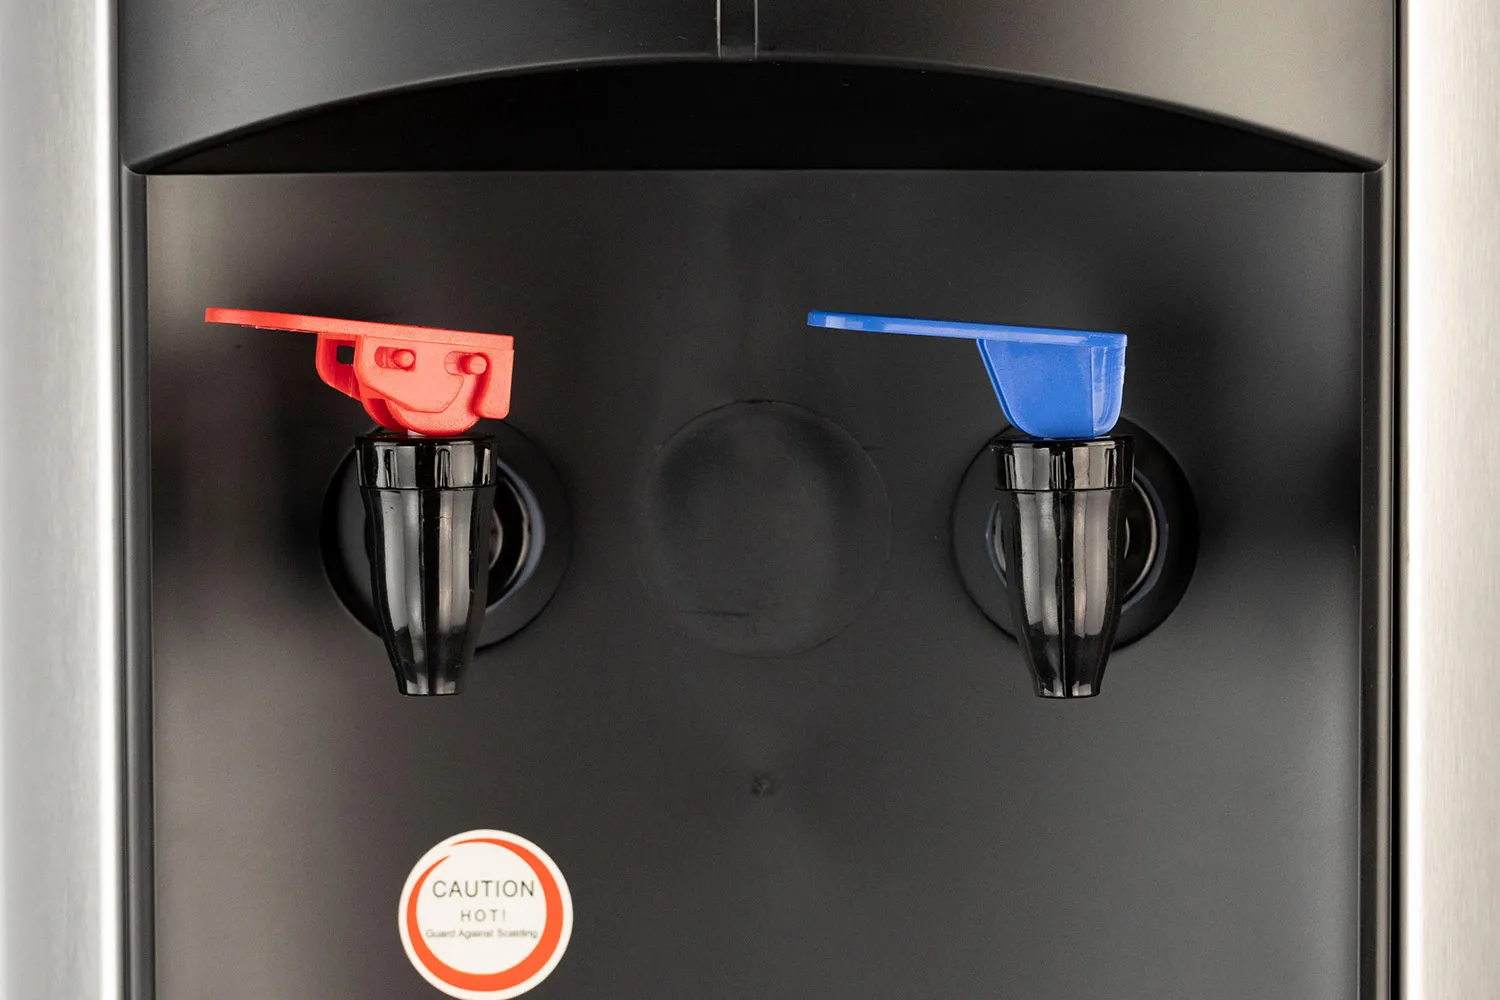 https://cdn.healthykitchen101.com/reviews/images/water-cooler-dispensers/frigidaire-stainless-steel-water-cooler-dispenser-water-dispensers-cld2u05th005z3p88691ubyws.jpg